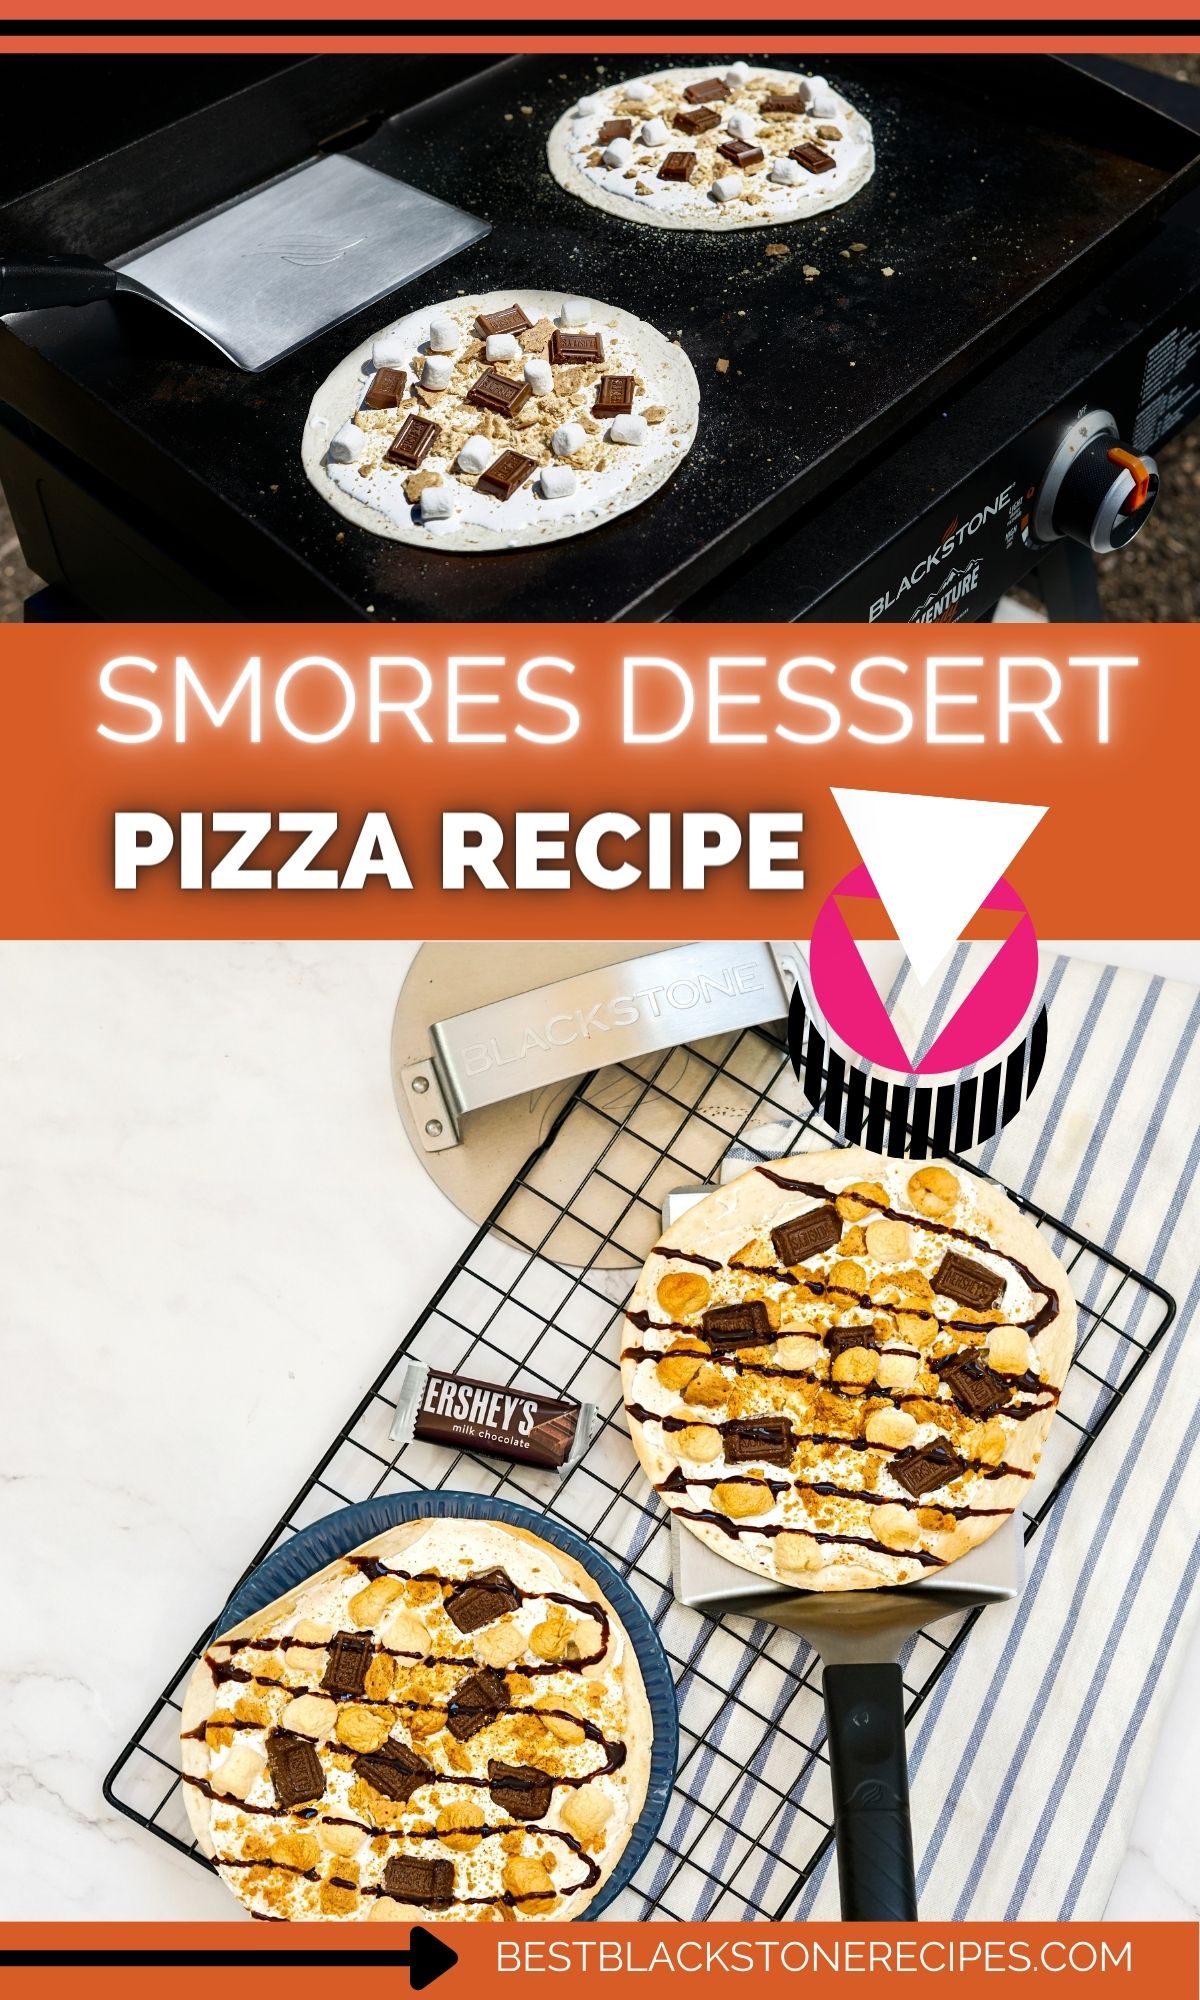 Custom DIY S'mores Dessert Pizza Making Kit